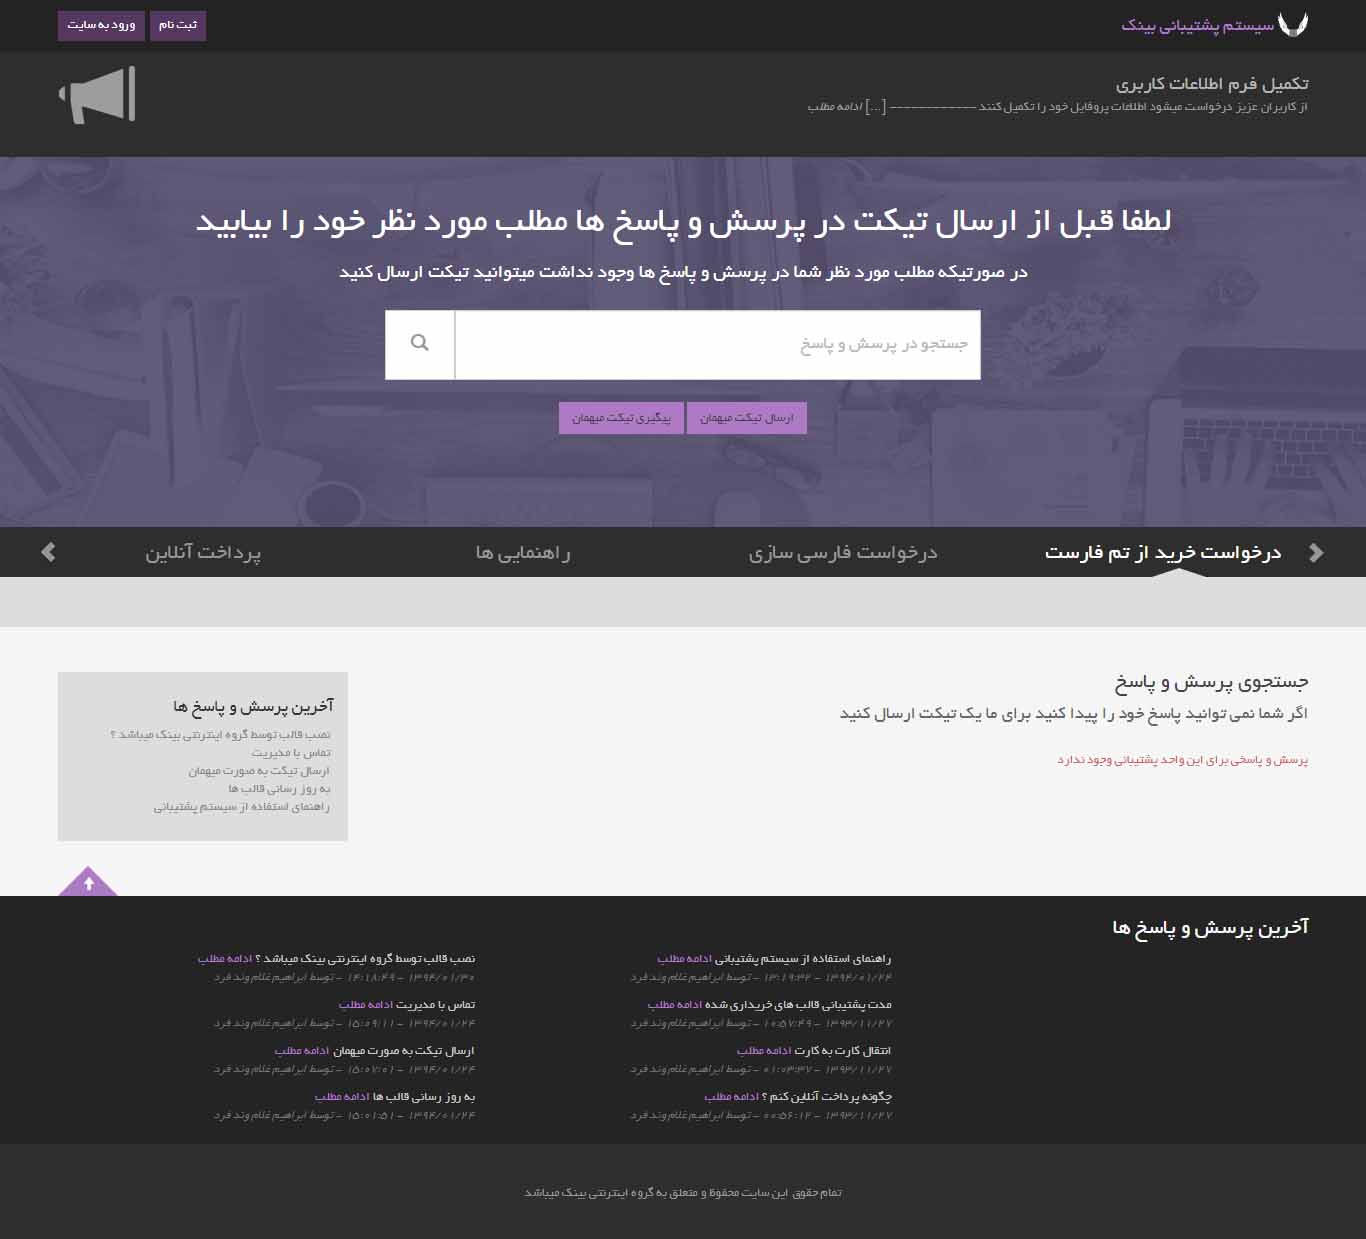 اسکریپت سیستم پشتیبانی و تیکتینگ | دانلود اسکریپت فارسی پشتیبانی و تیکت | تیکتینگ فارسی